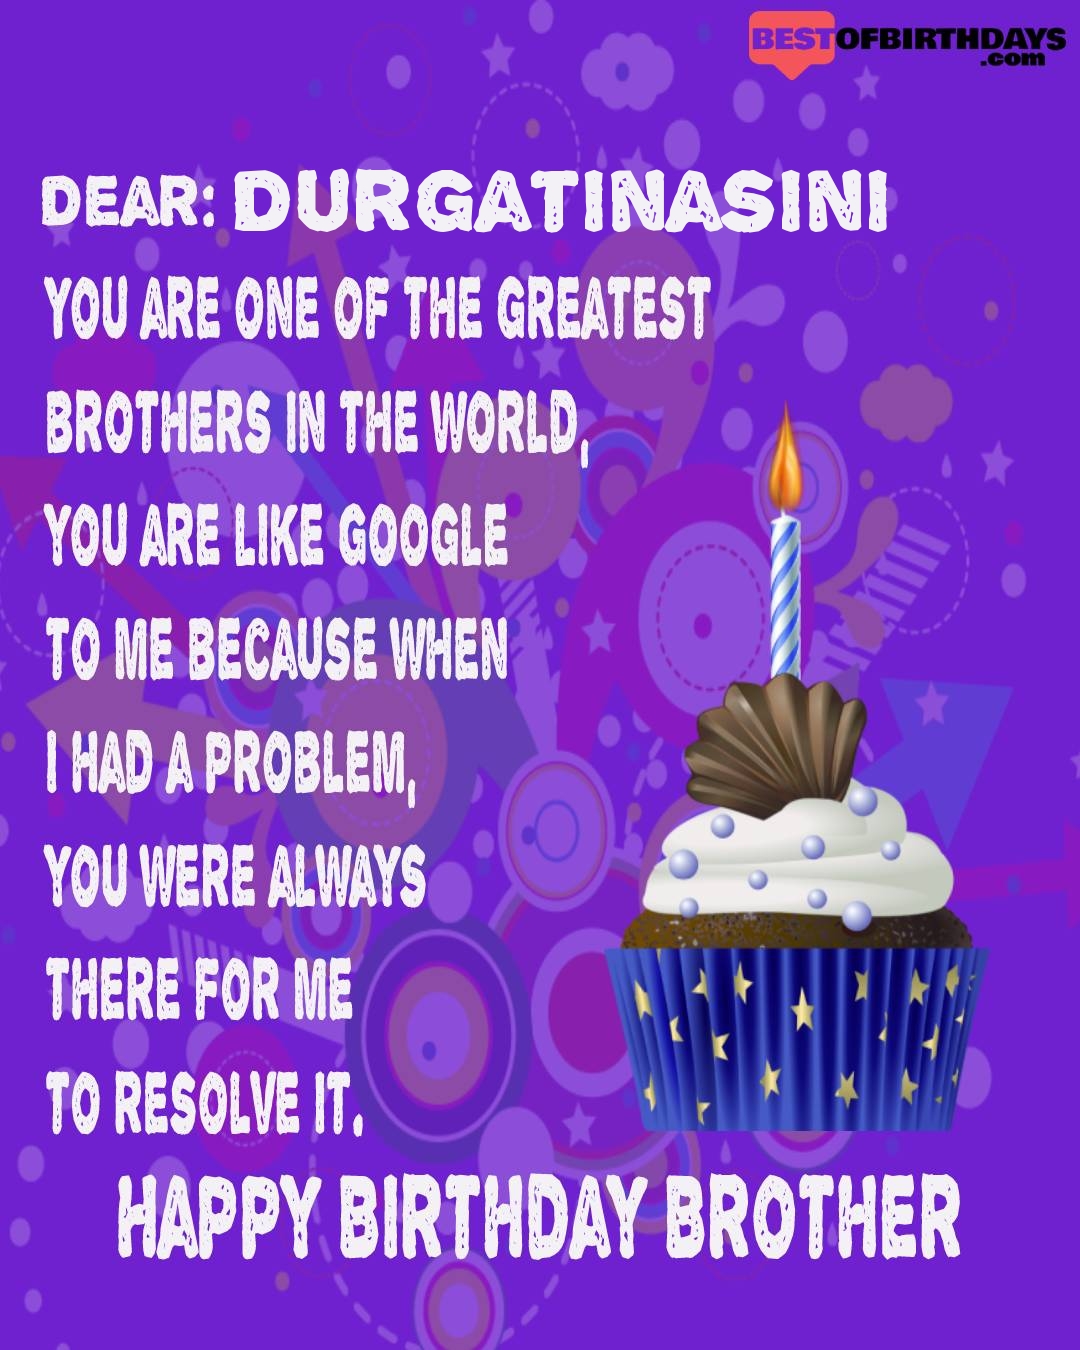 Happy birthday durgatinasini bhai brother bro